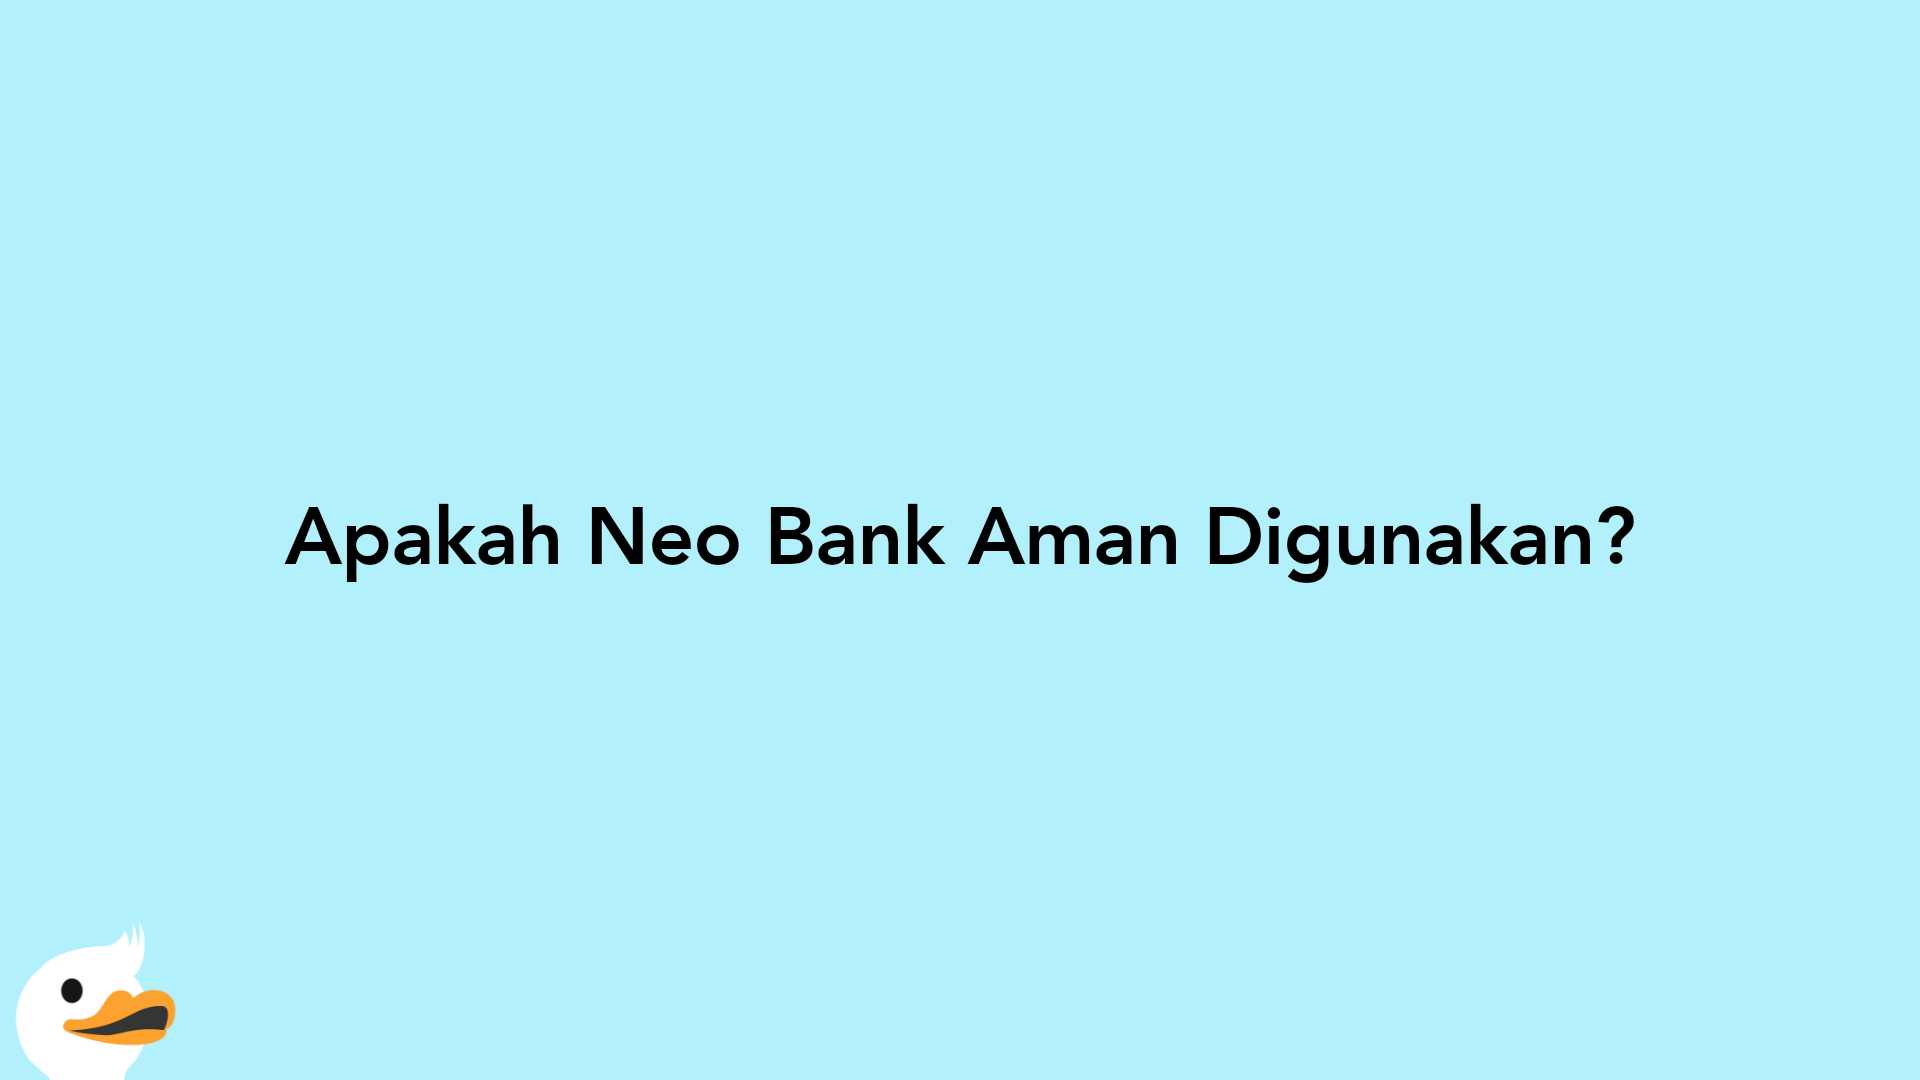 Apakah Neo Bank Aman Digunakan?